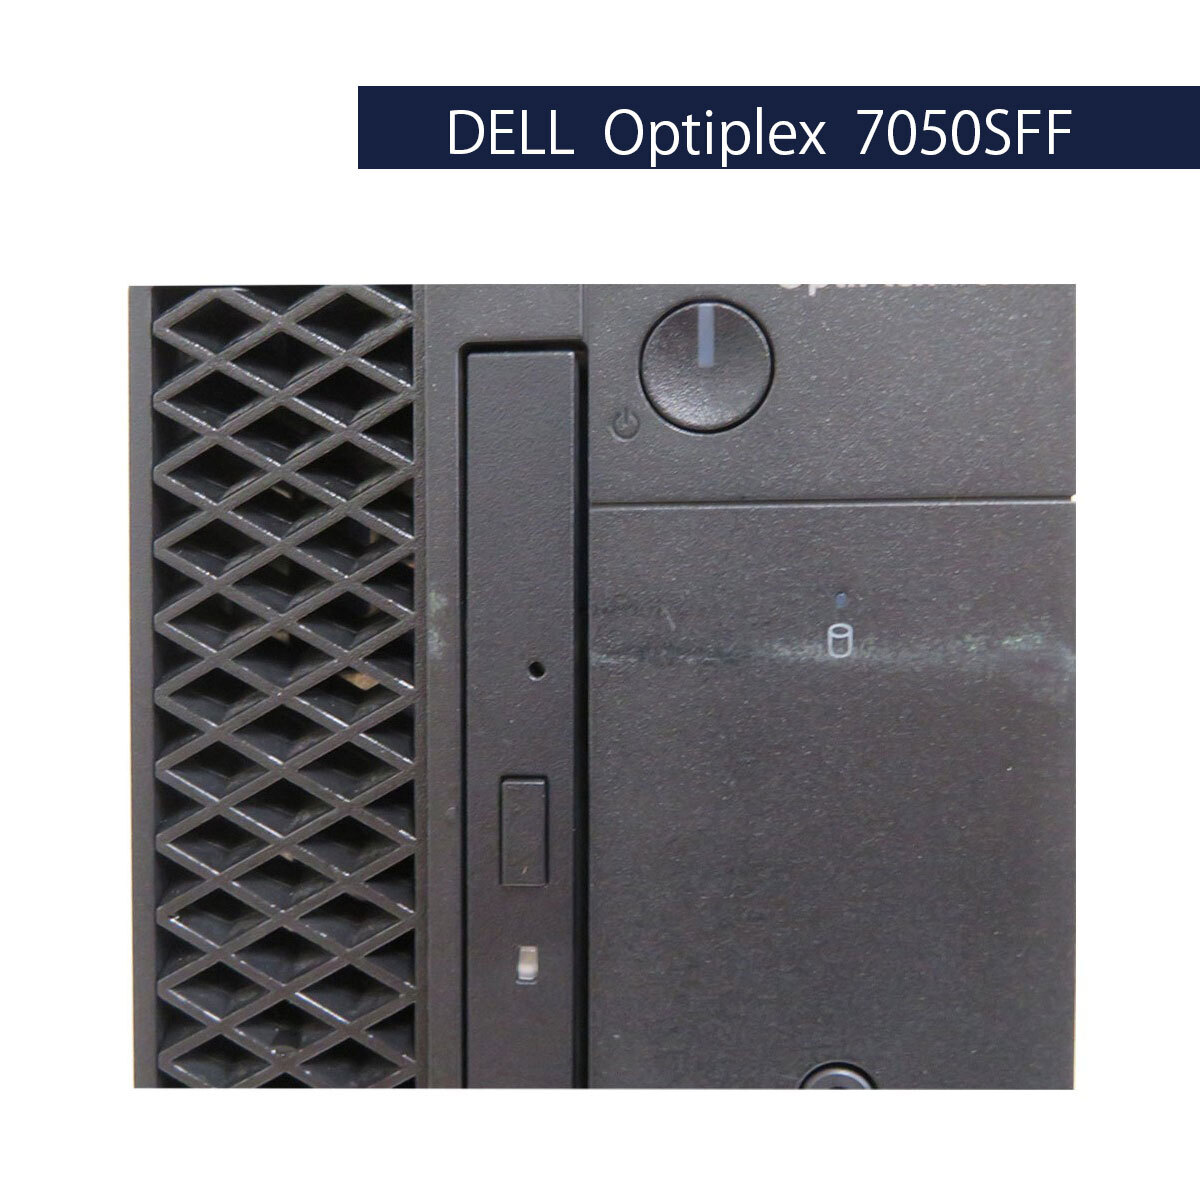 中古デスクトップパソコン DELL Optiplex 7050SFF Core i5 6500 3.2GHz 4GB 500GB Windows10 Pro 64Bit [967]_画像3